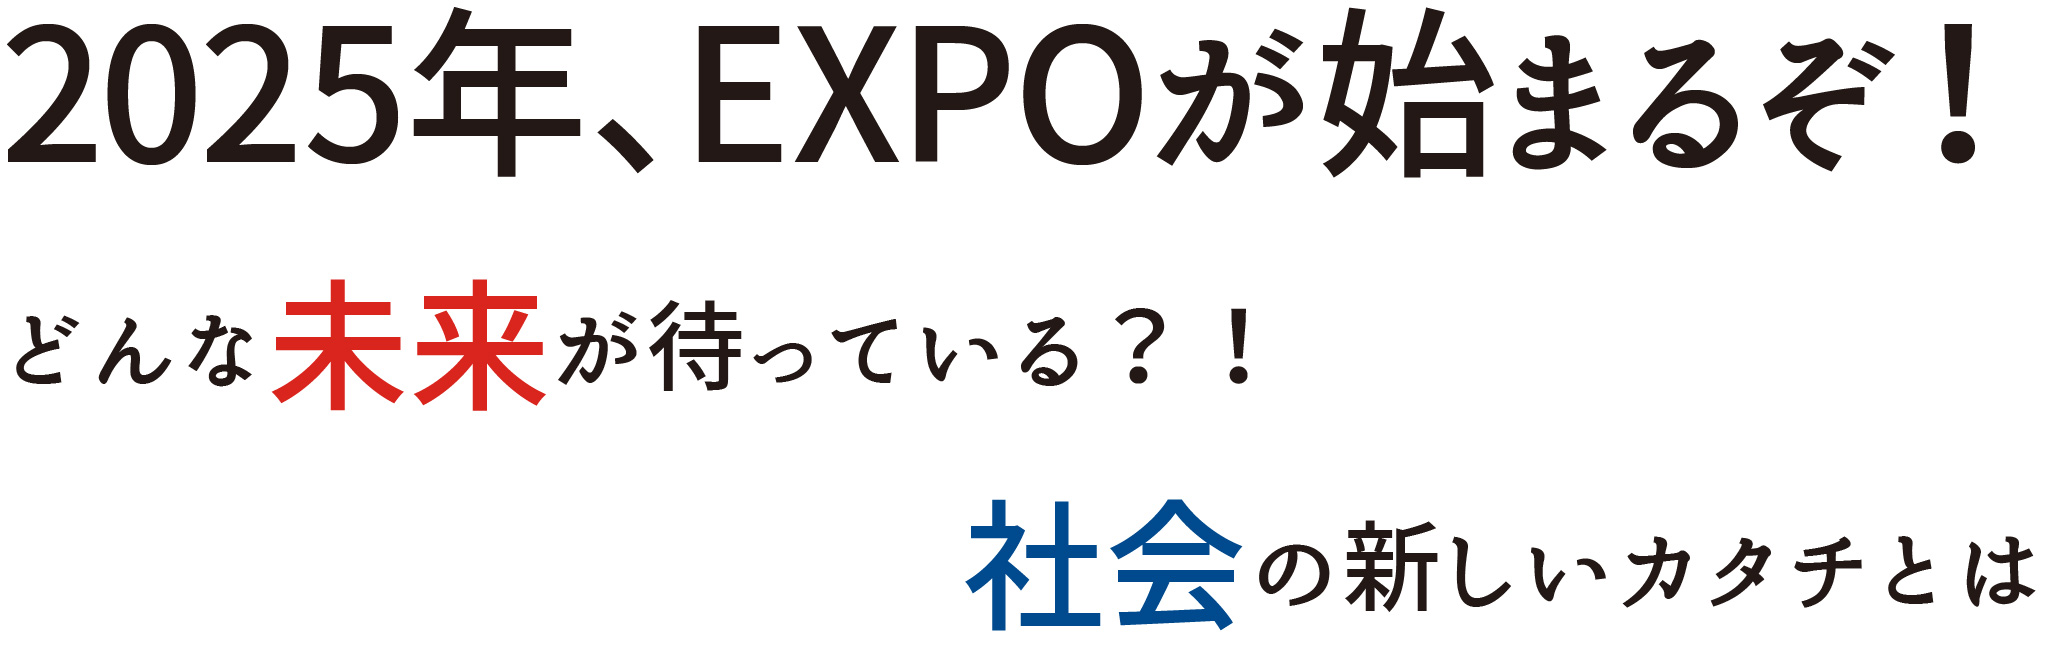 2025年、EXPOが始まるぞ!